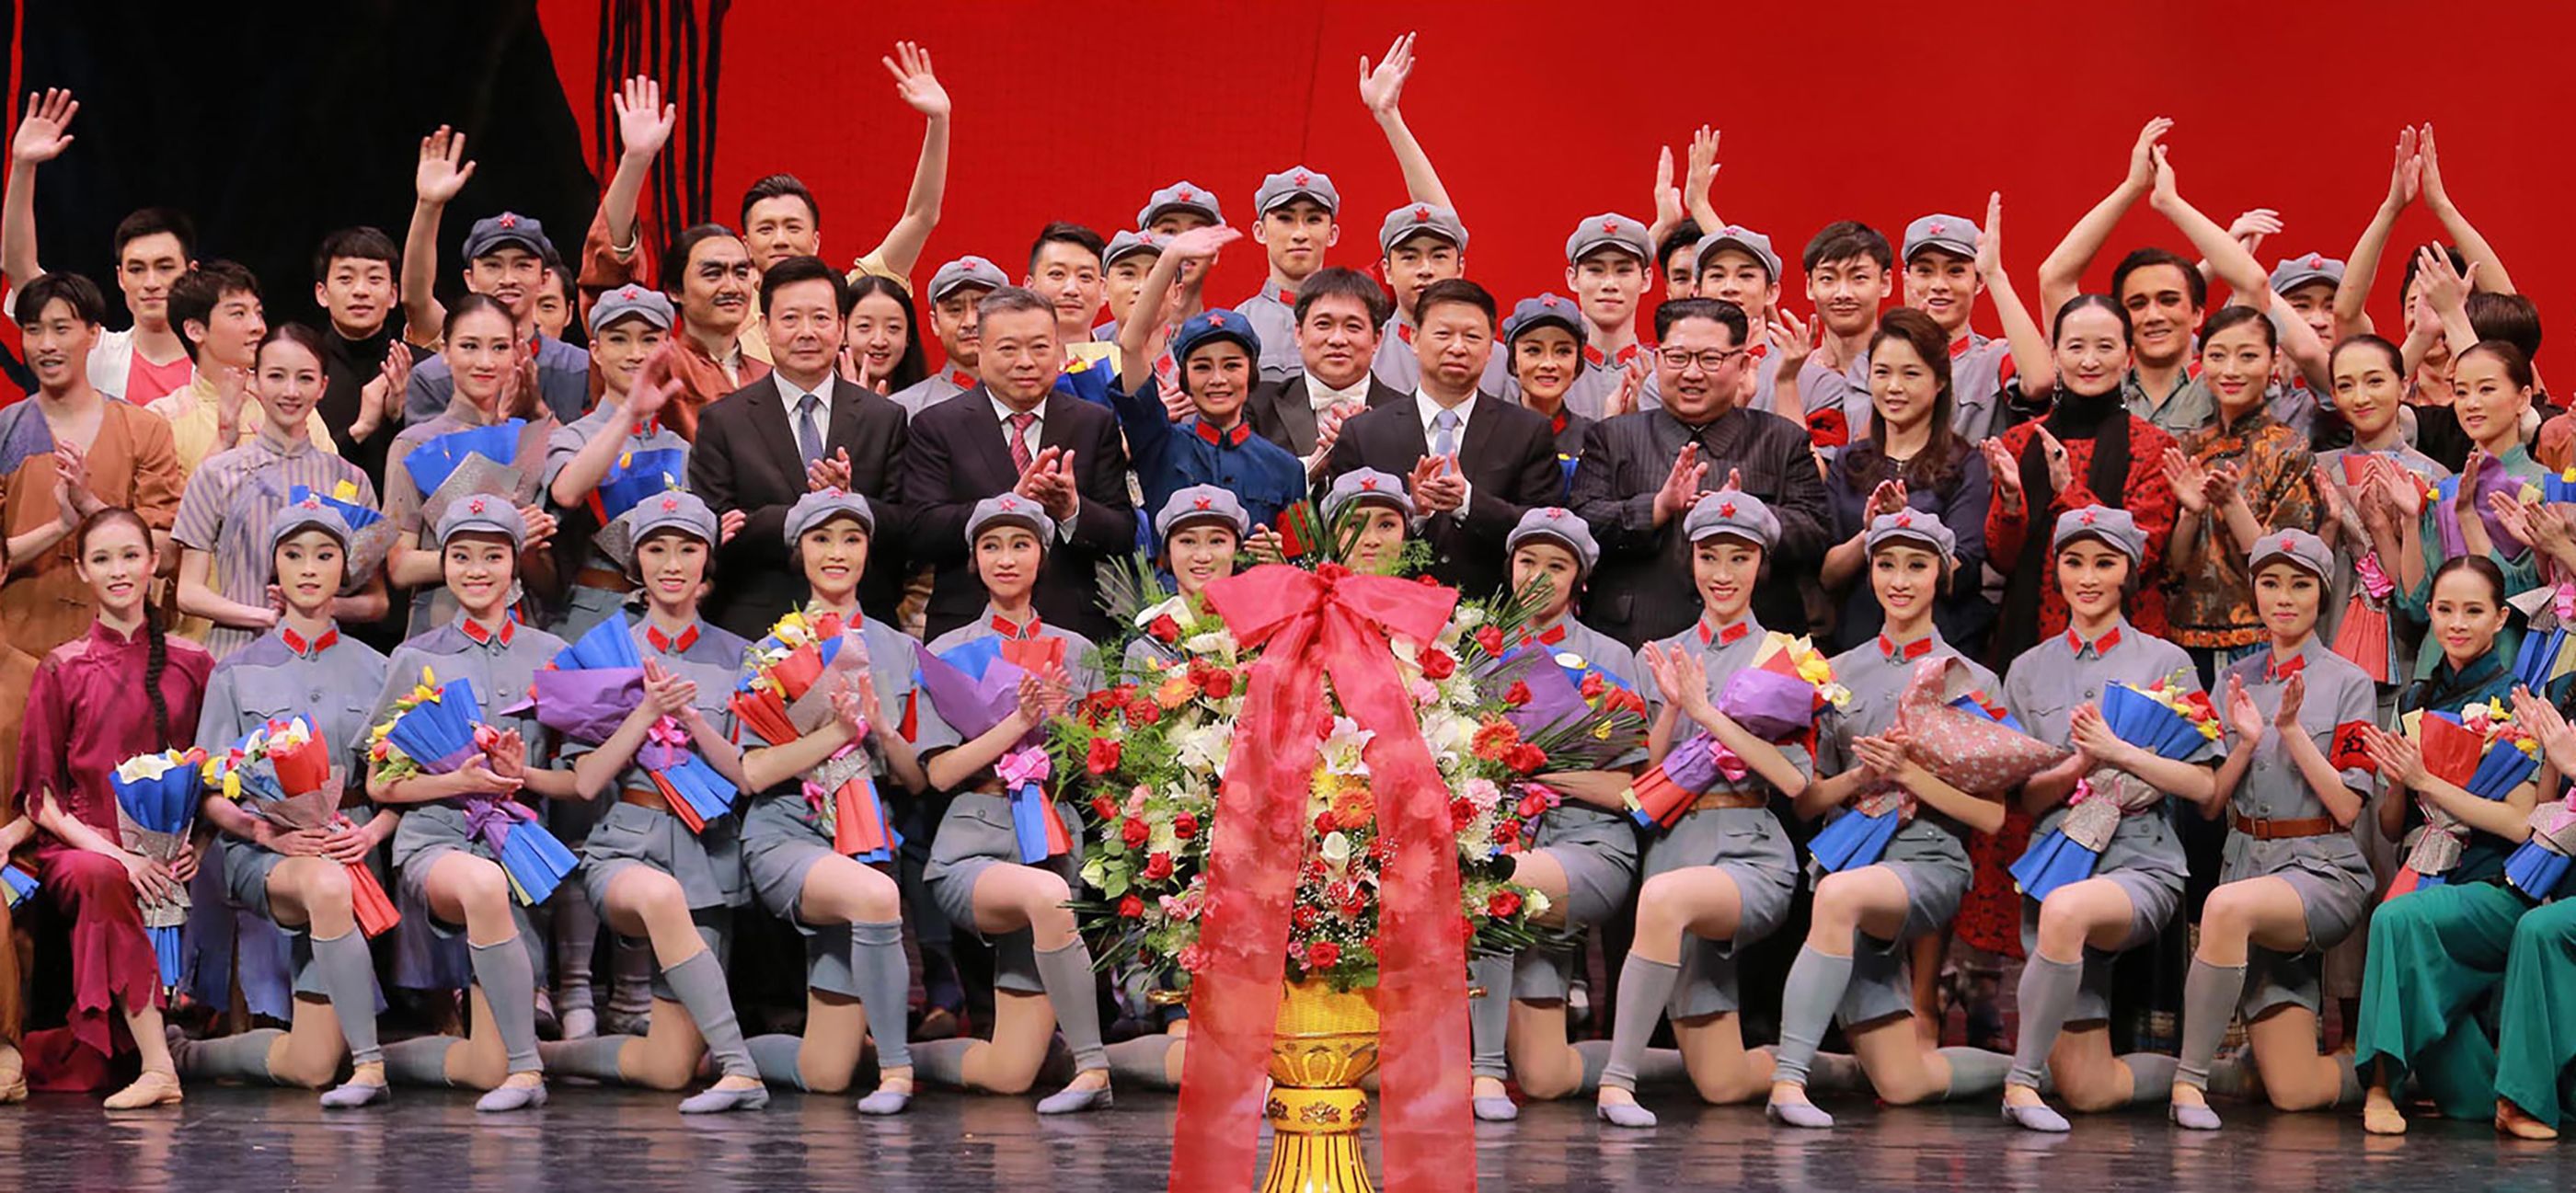 زعيم كوريا الشمالية وزوجته يحضران حفلا استعراضيا لفرقة صينية